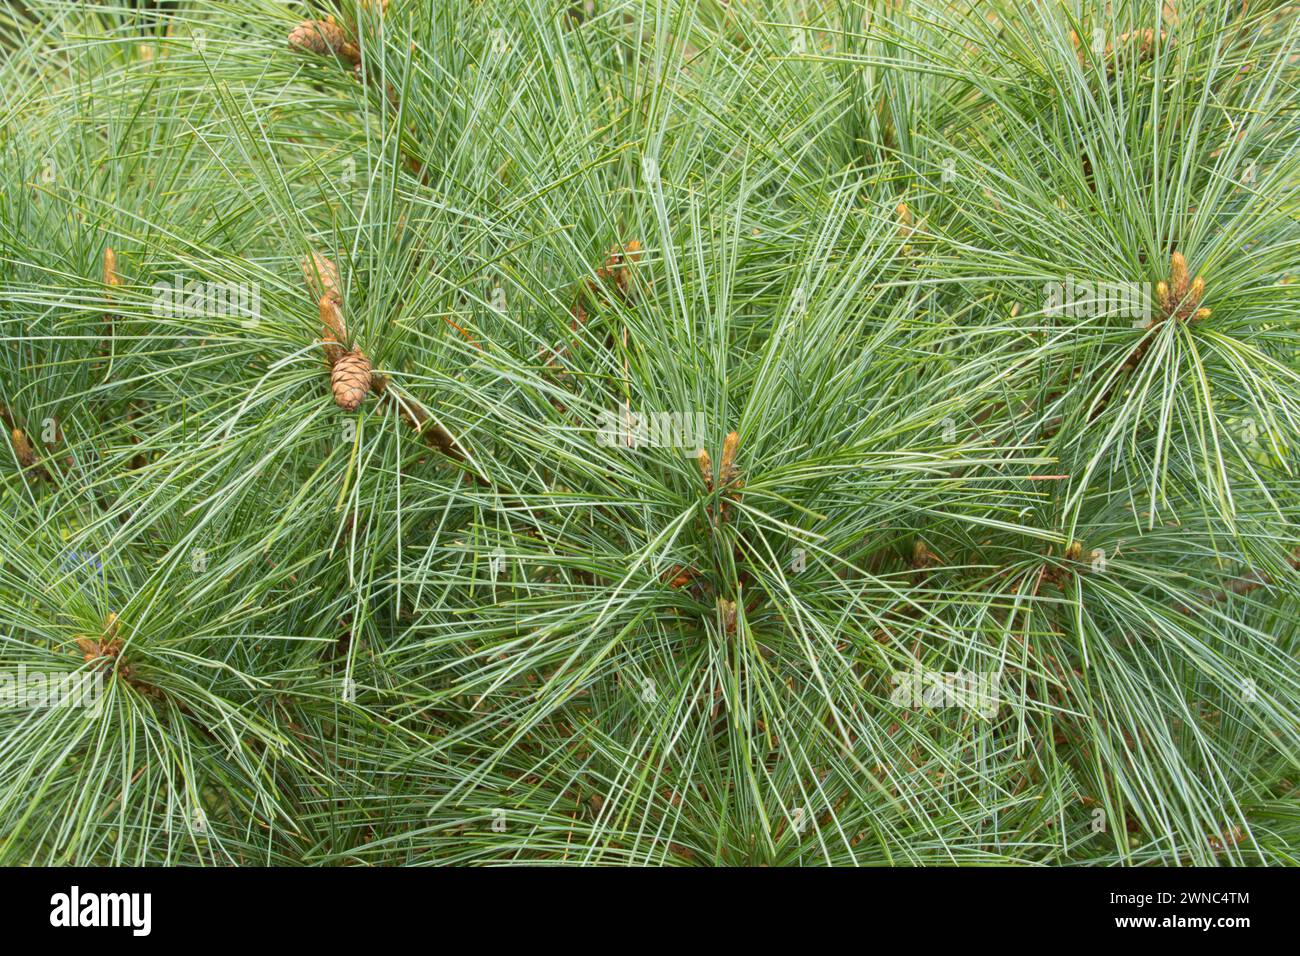 White pine (Pinus strobus), Oregon Garden, Silverton, Oregon Stock Photo